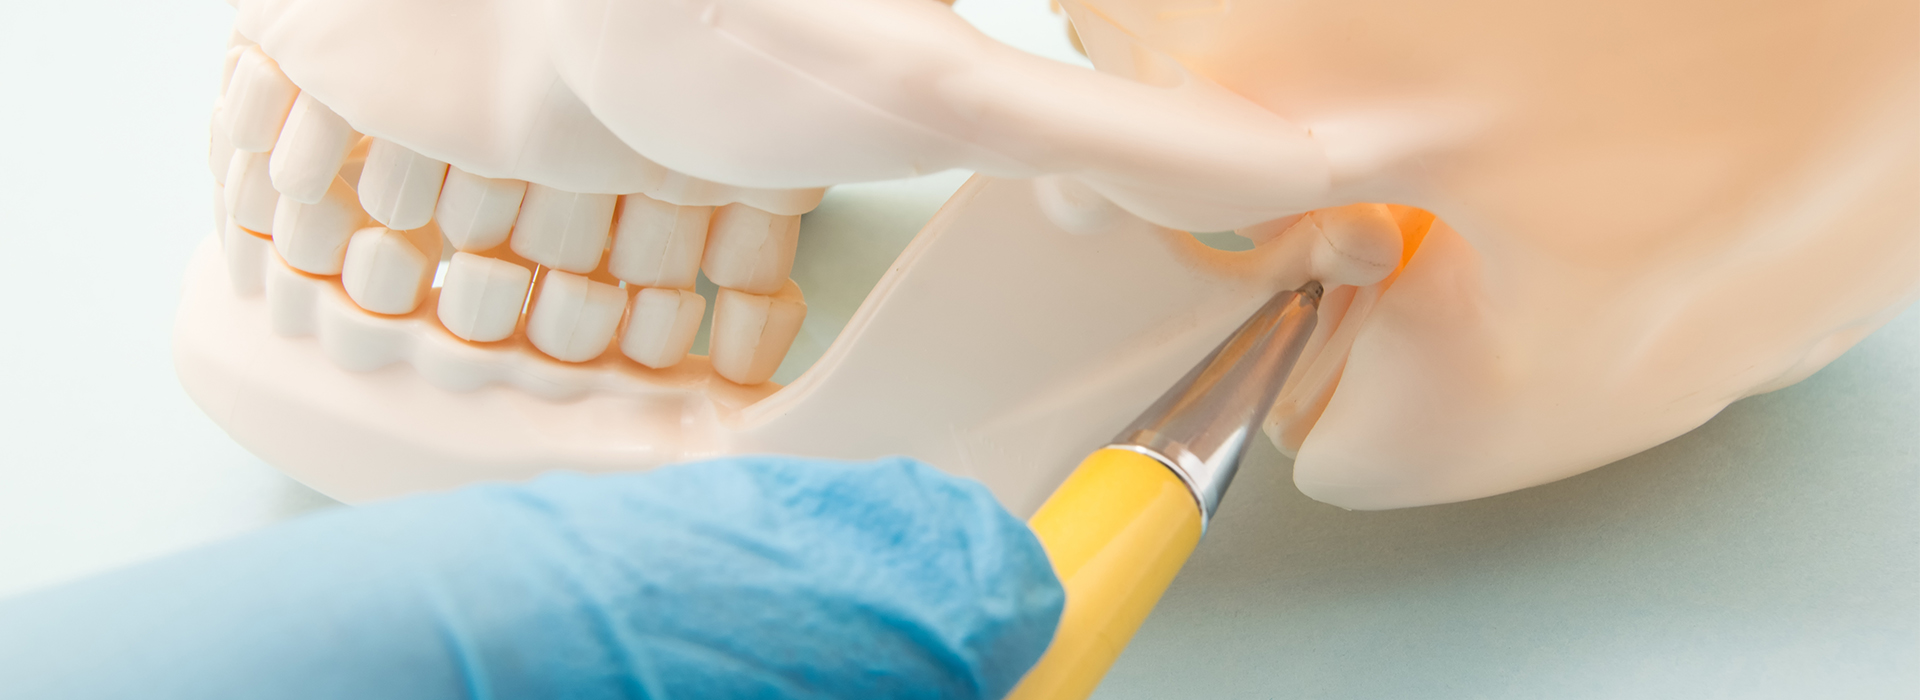 Dental Implants Dentist Oklahoma City